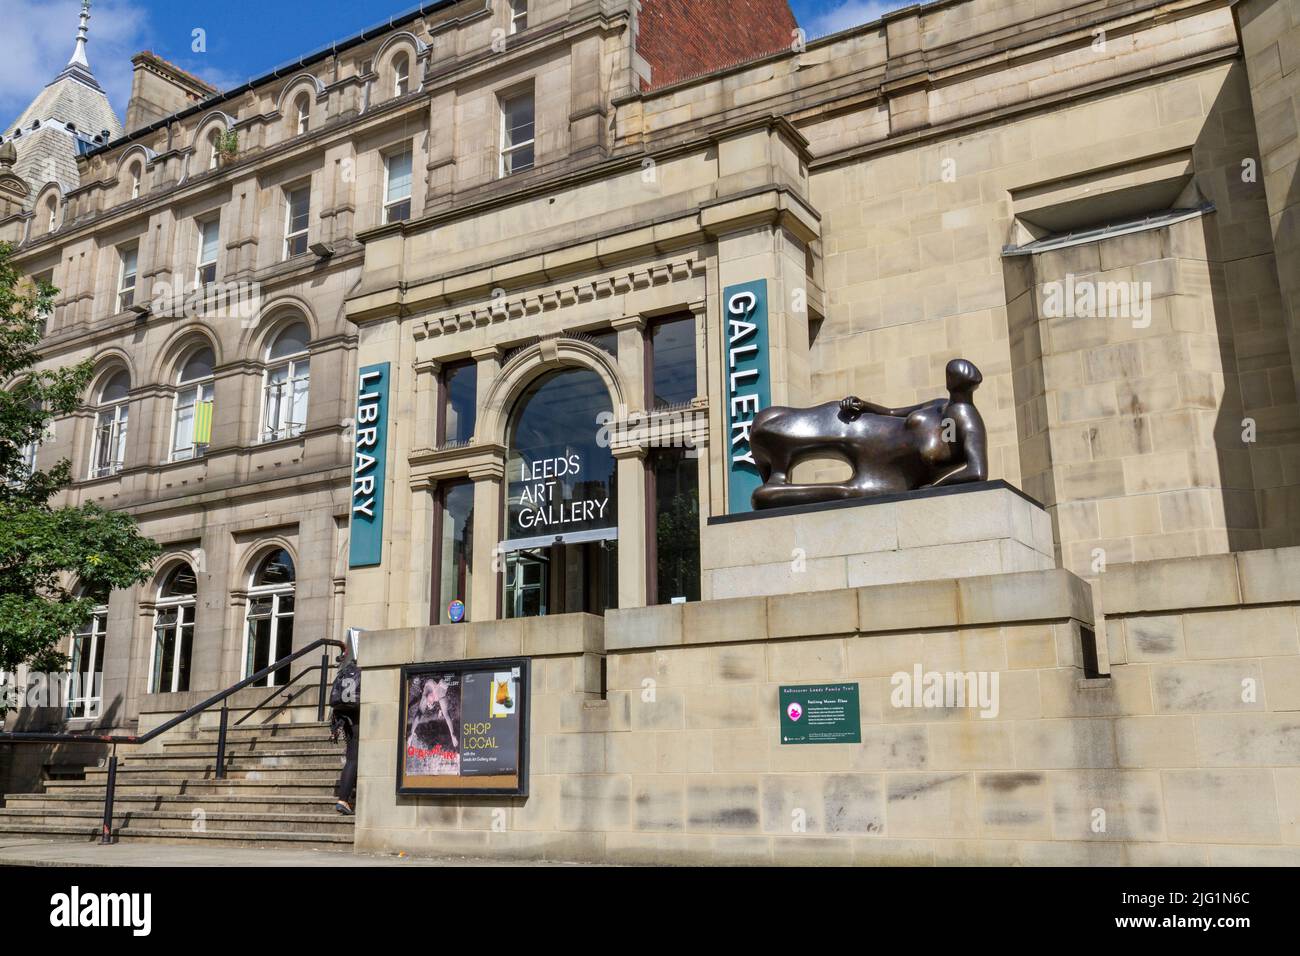 Entrée principale et escalier de la galerie d'art de Leeds, centre-ville de Leeds, West Yorkshire, Royaume-Uni. Banque D'Images